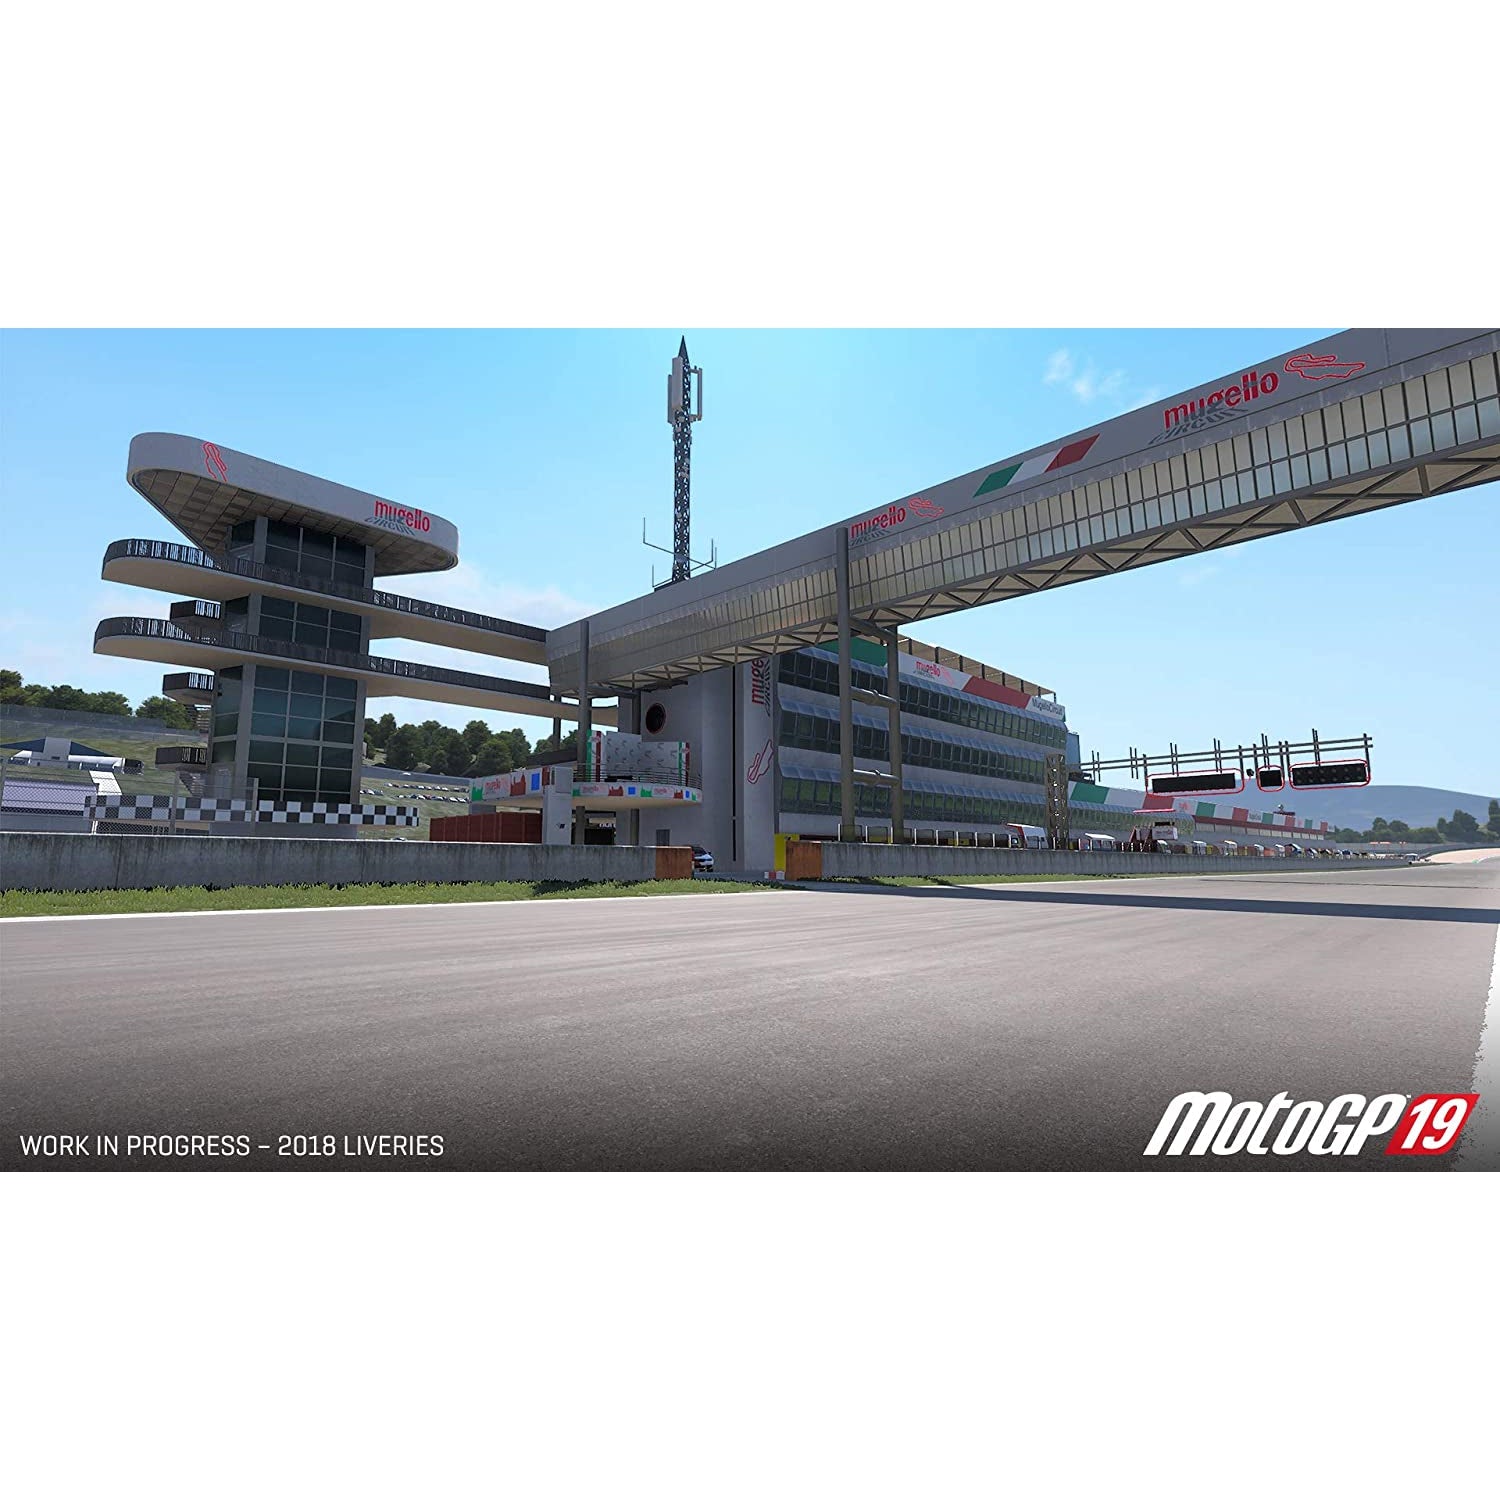 MotoGP 19 (PS4)